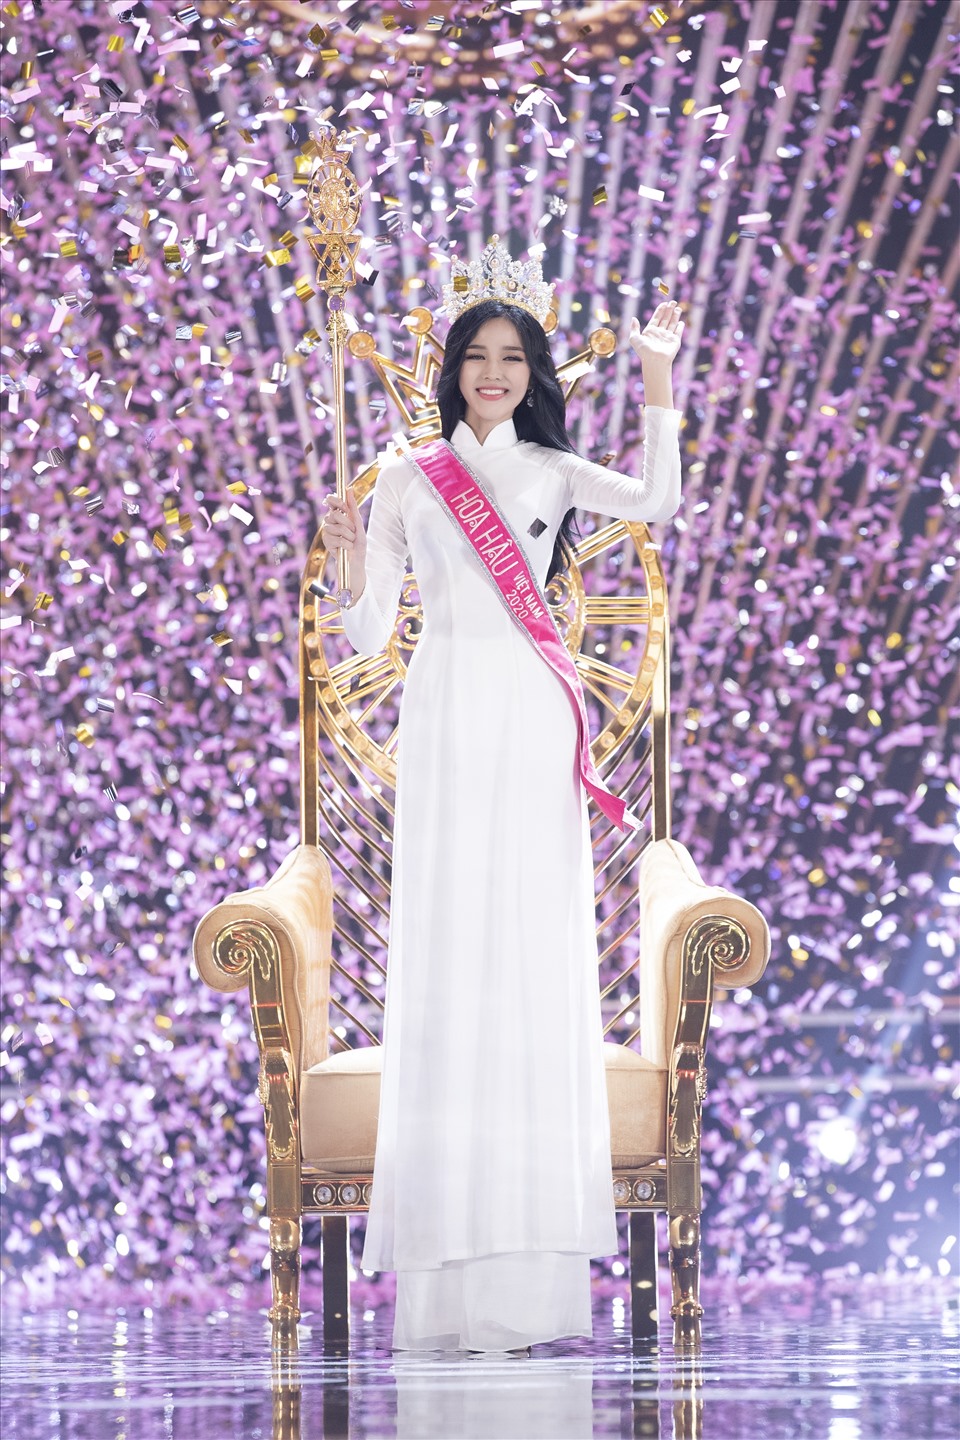 Chân dài quê Thanh Hóa đã trải qua một hành trình dài để chạm đến ngôi vị cao nhất của Hoa hậu Việt Nam 2020.